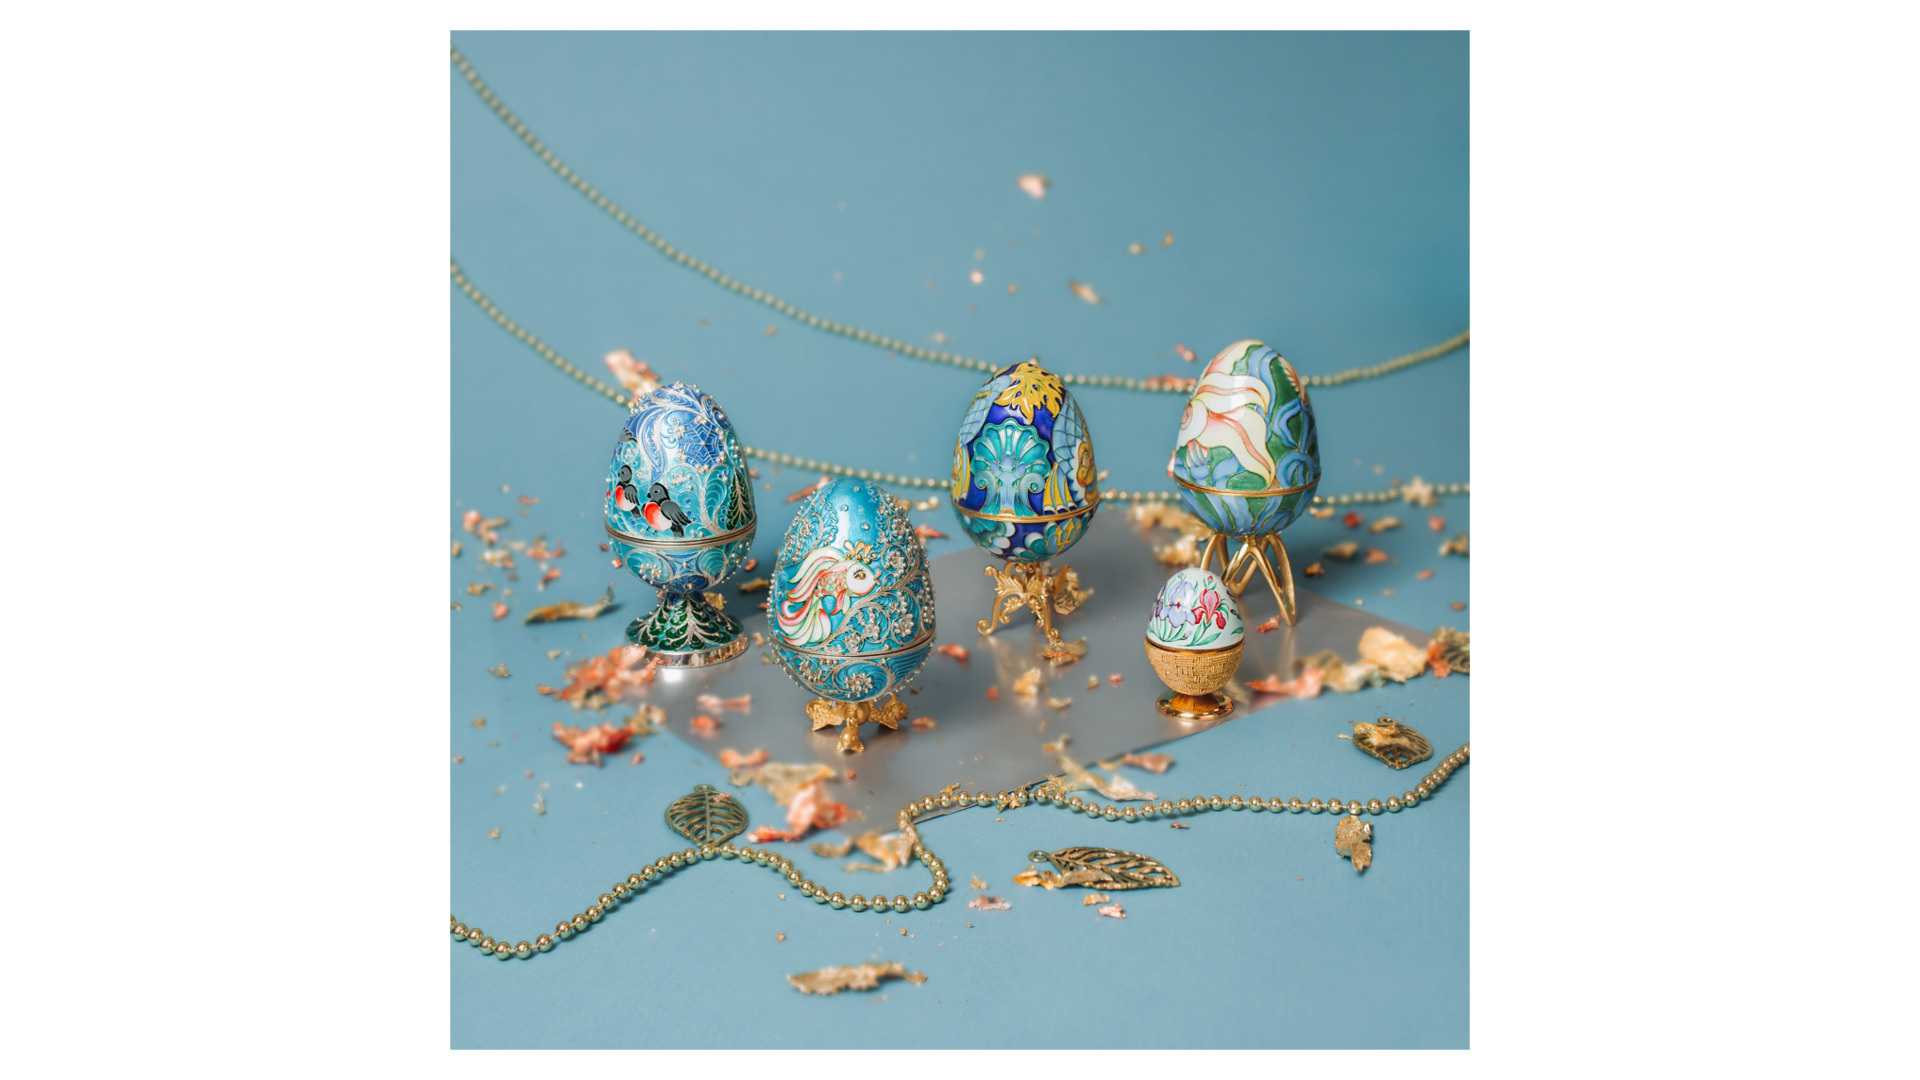 Шкатулка-яйцо Русские самоцветы 184,36 г, медь, позолота, эмаль